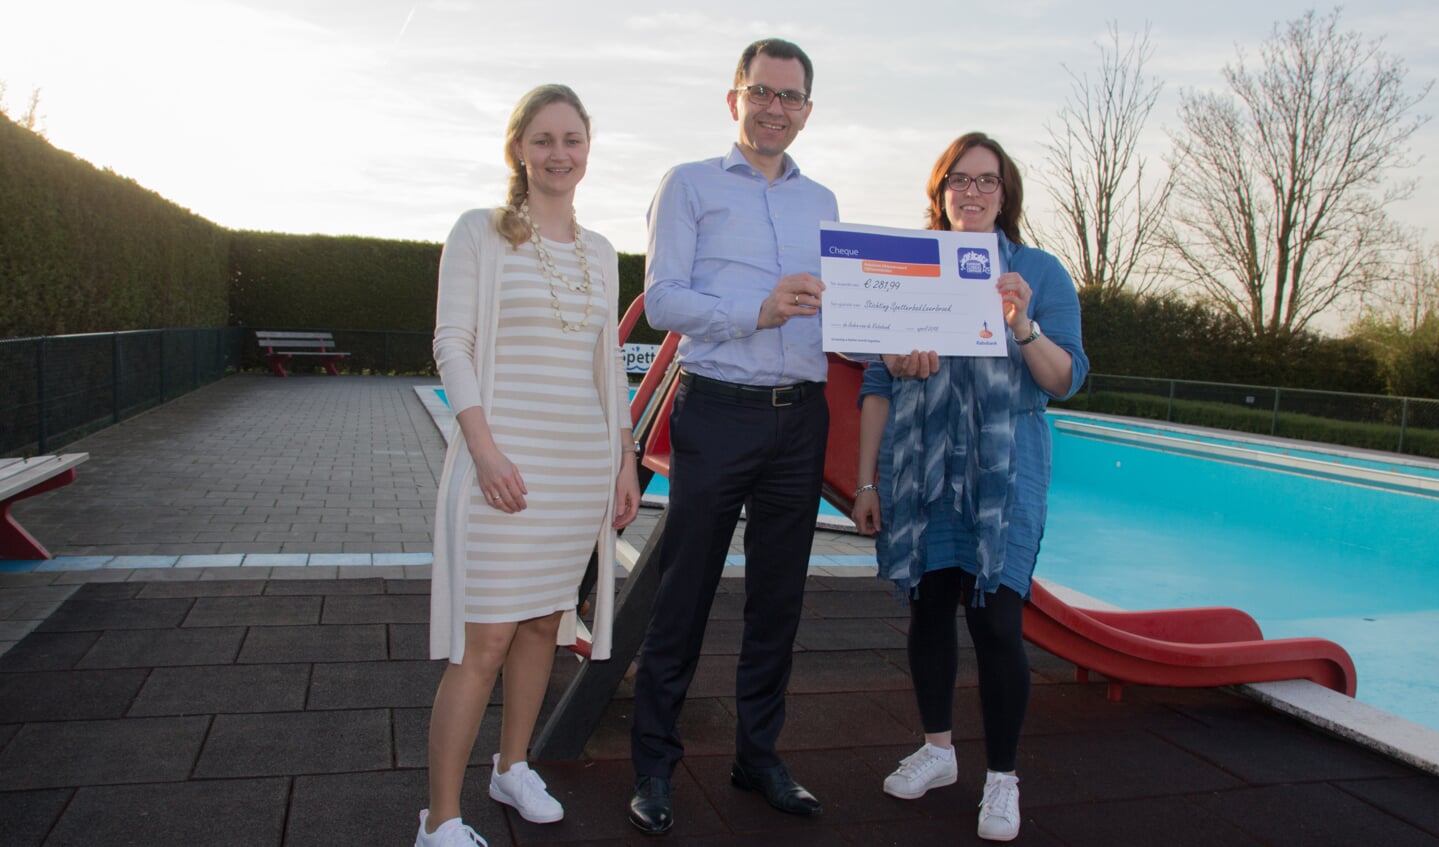 Namens Stichting Spetterbad Leerbroek ontvangen de voorzitster Dorien Barneveld en penningmeester Bethina de Jong een cheque van de Rabobank Clubkas Campagne ter grootte van € 281,99